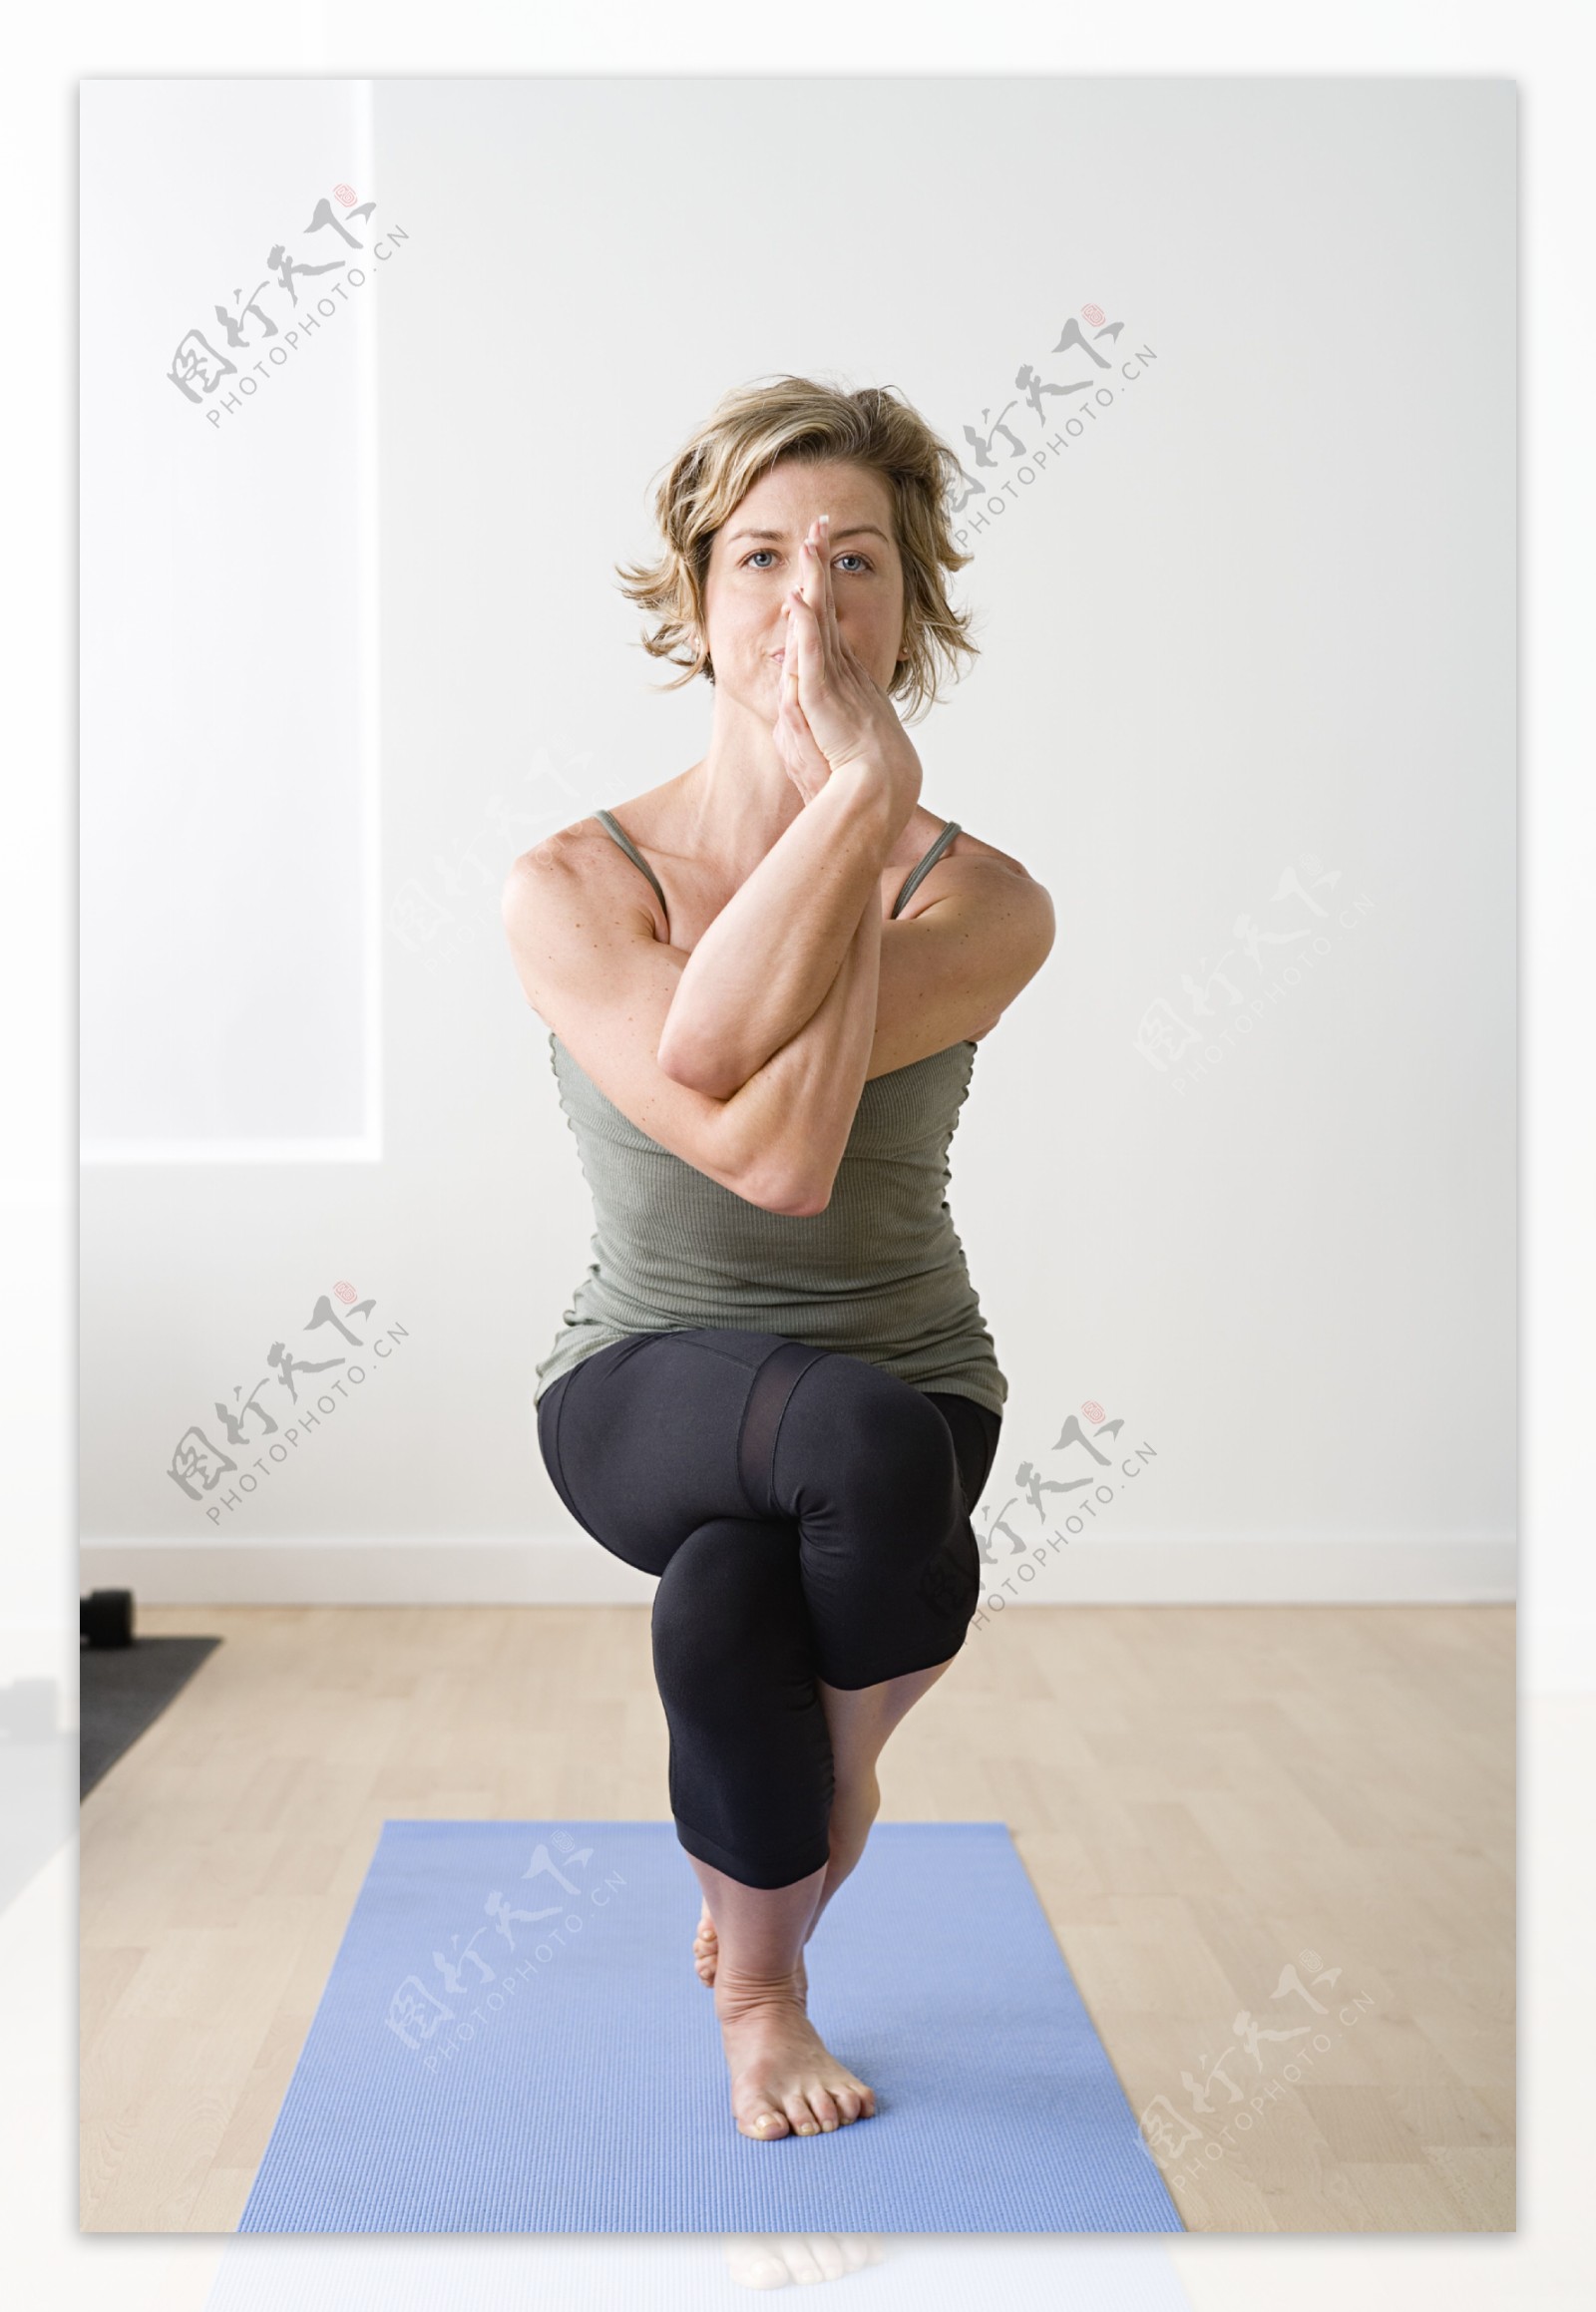 高难度瑜伽练习的女性图片